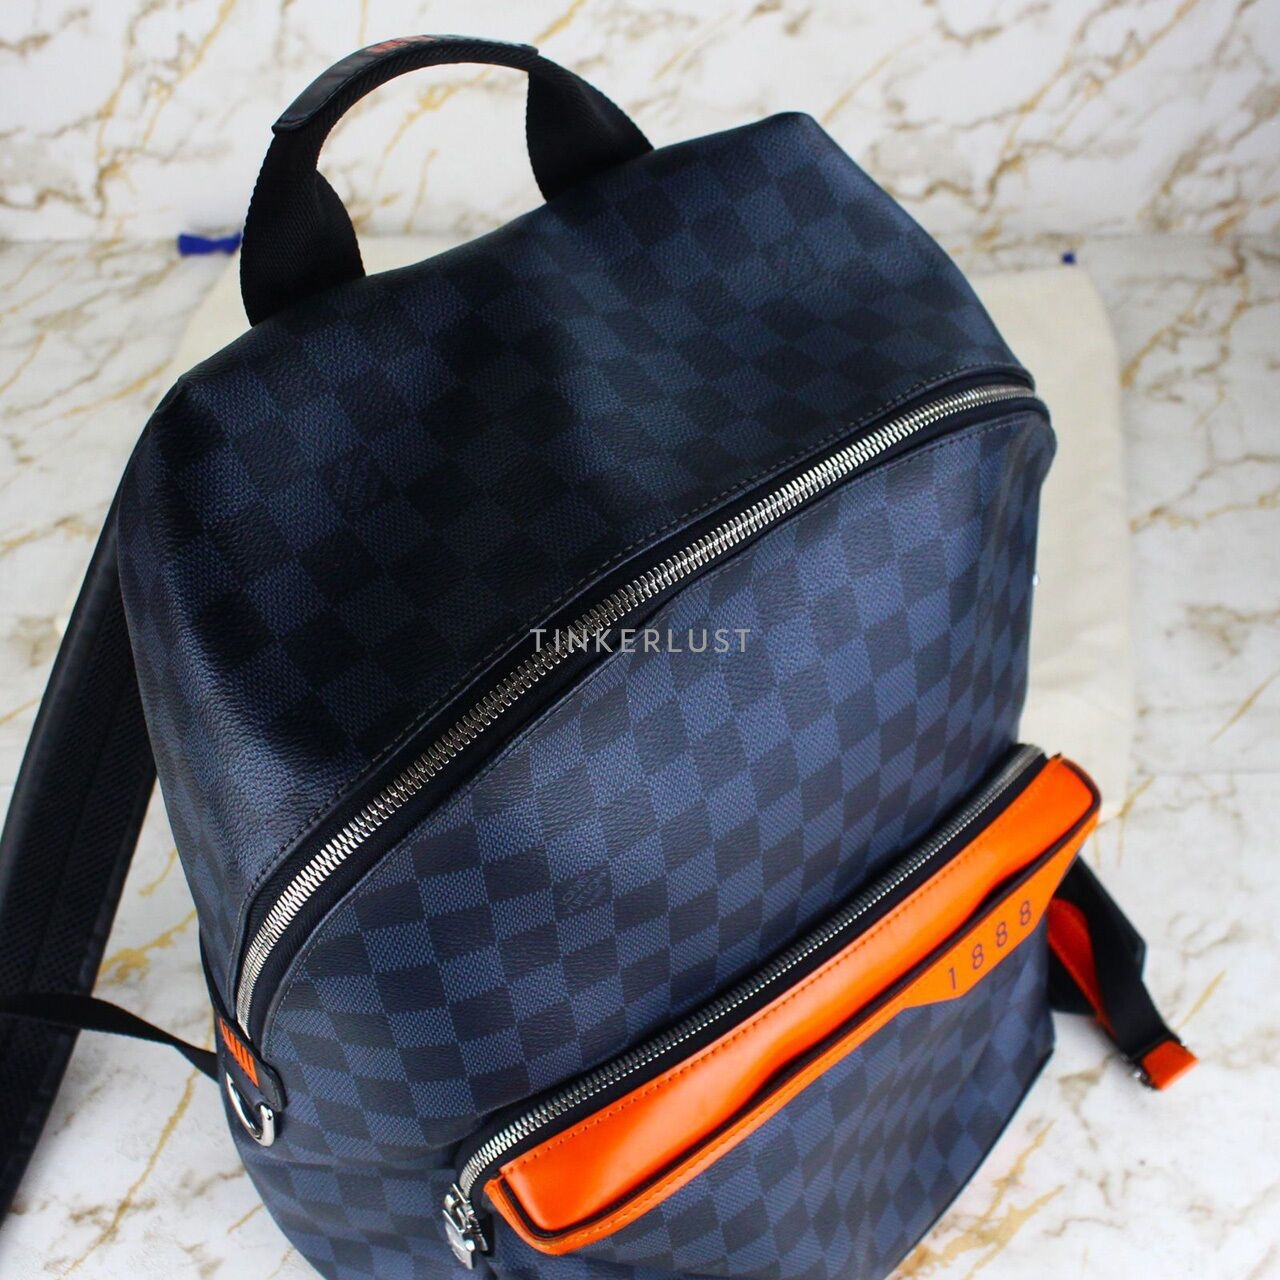 Louis Vuitton 1888 Damier Cobalt Backpack